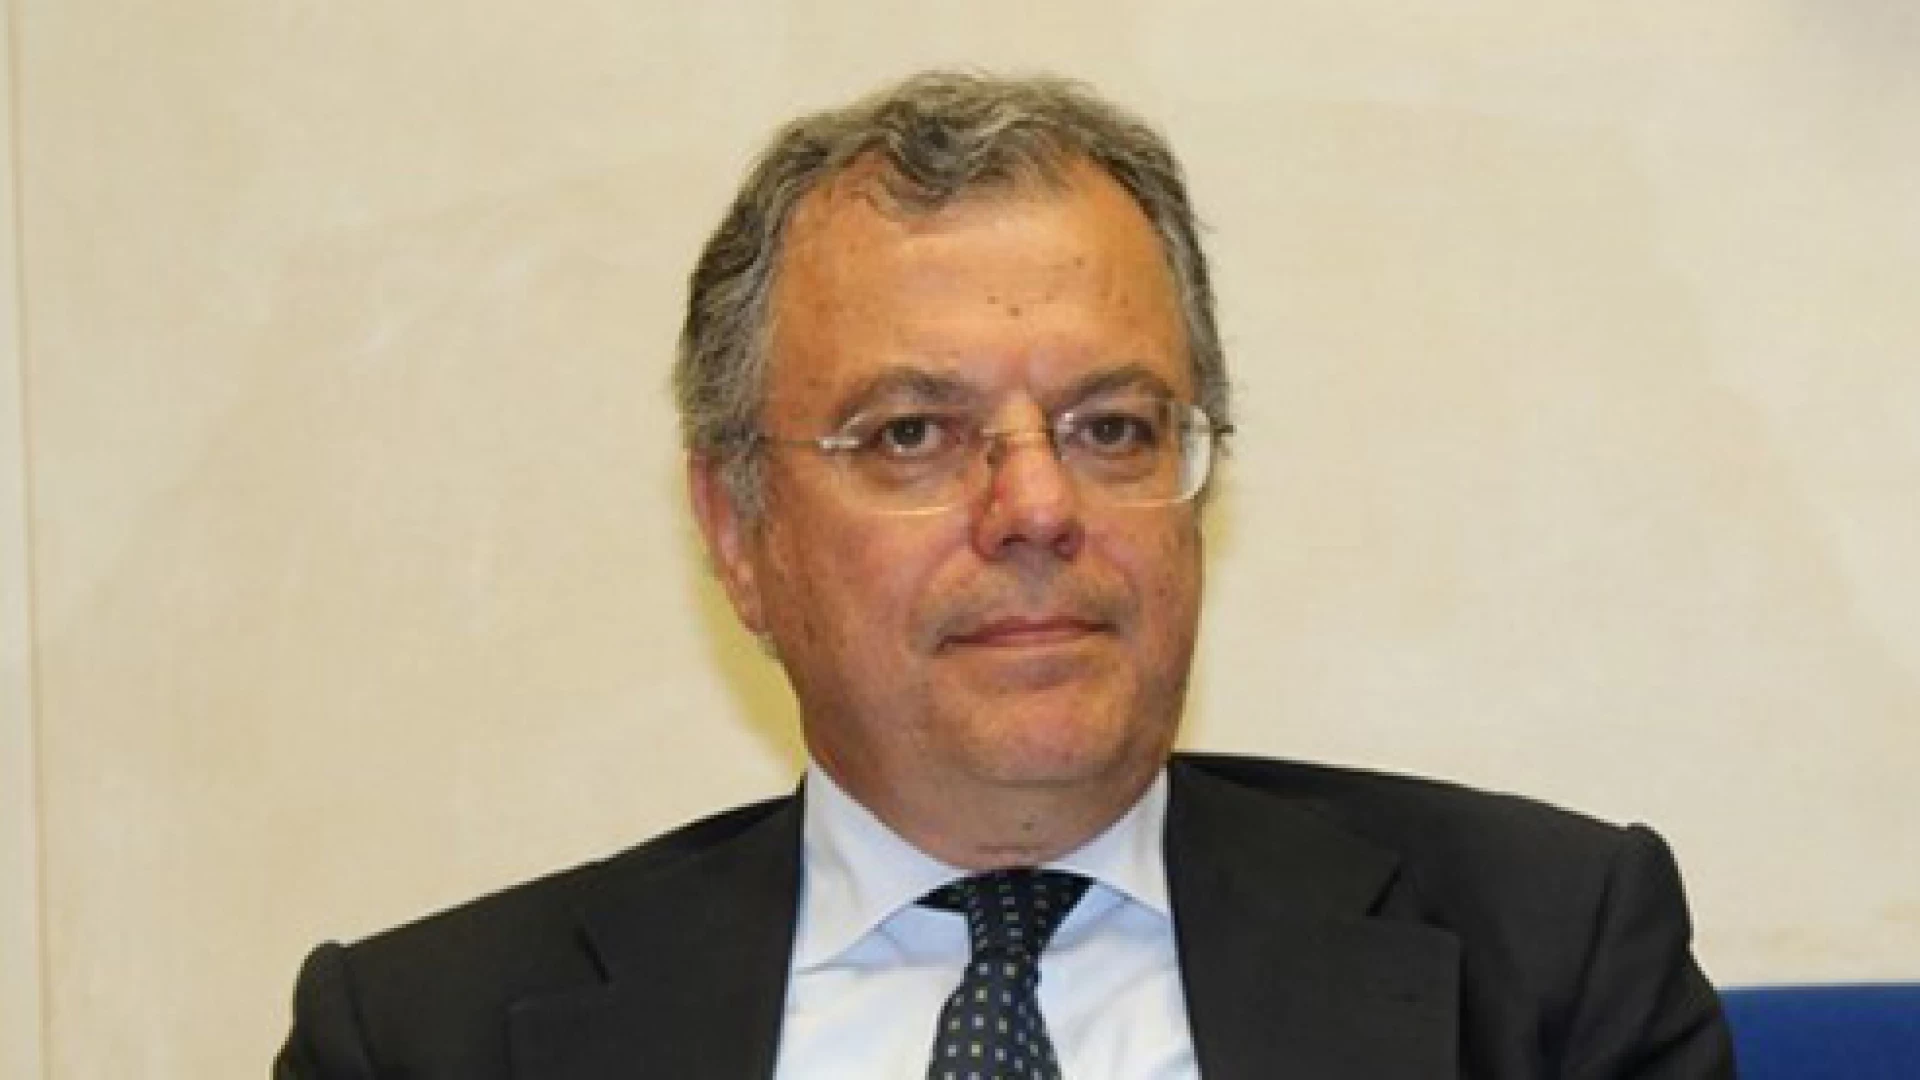 Commissione antimafia, Vittorio Nola (M5S) tra i componenti. “Sarà uno strumento di monitoraggio e prevenzione”.